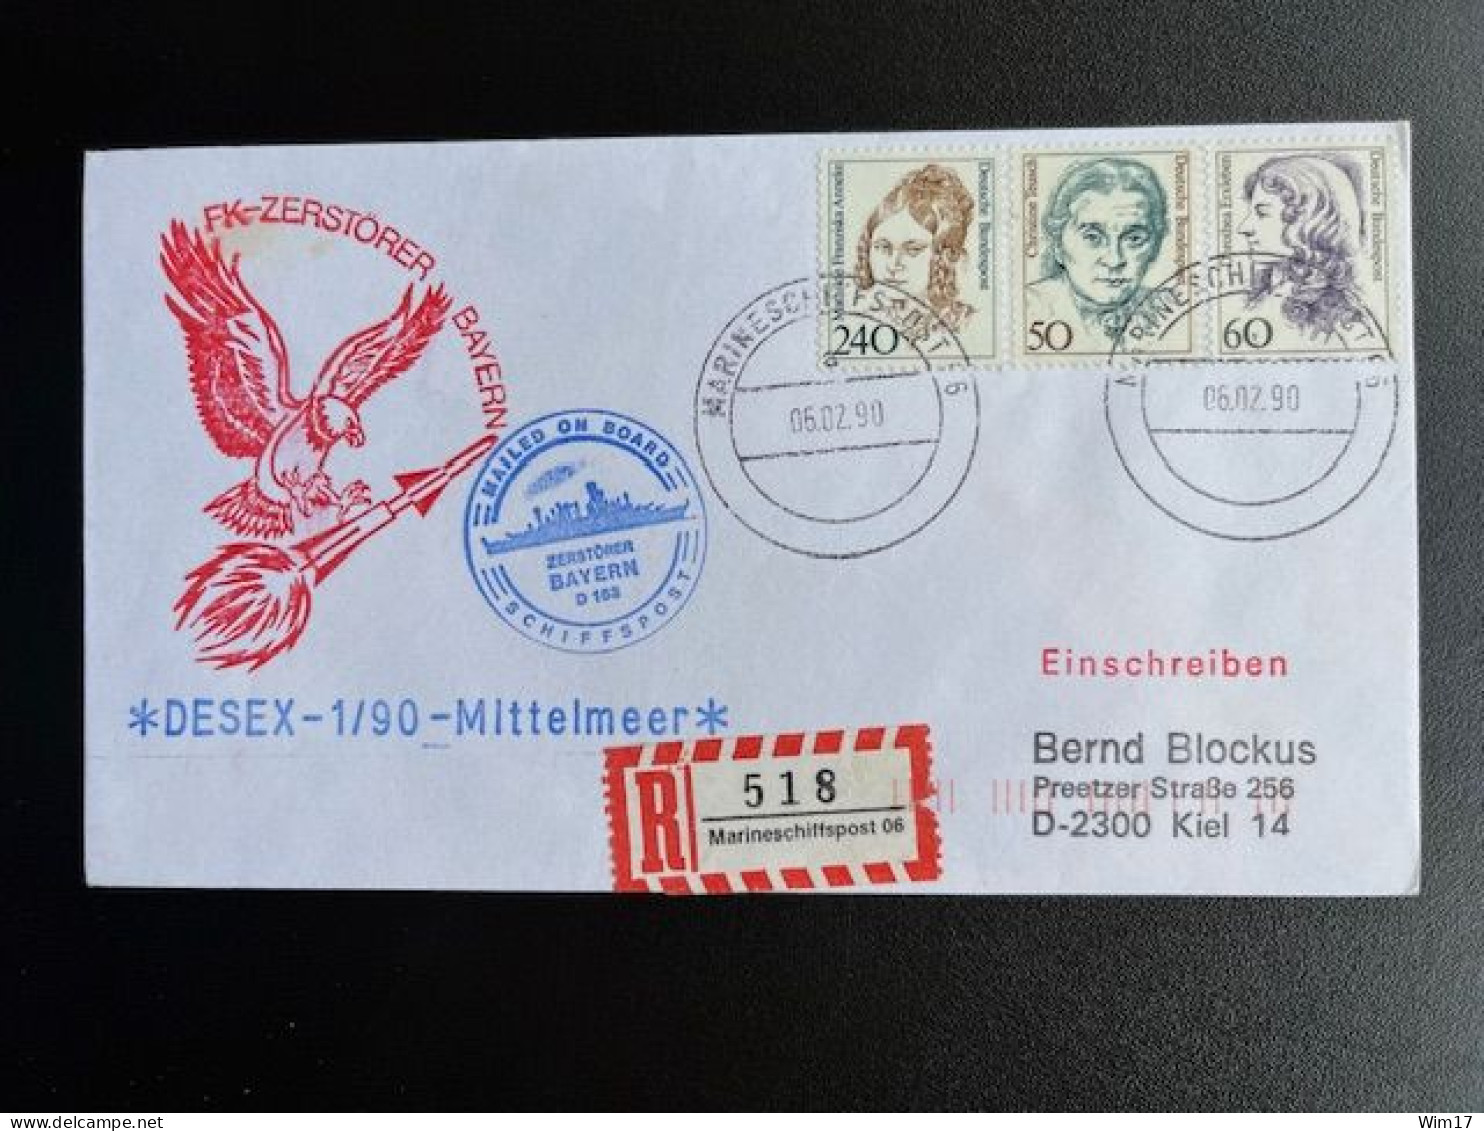 GERMANY 1990 REGISTERED LETTER MARINESCHIFFSPOST 06 TO KIEL 06-02-1990 DUITSLAND DEUTSCHLAND EINSCHREIBEN - Briefe U. Dokumente